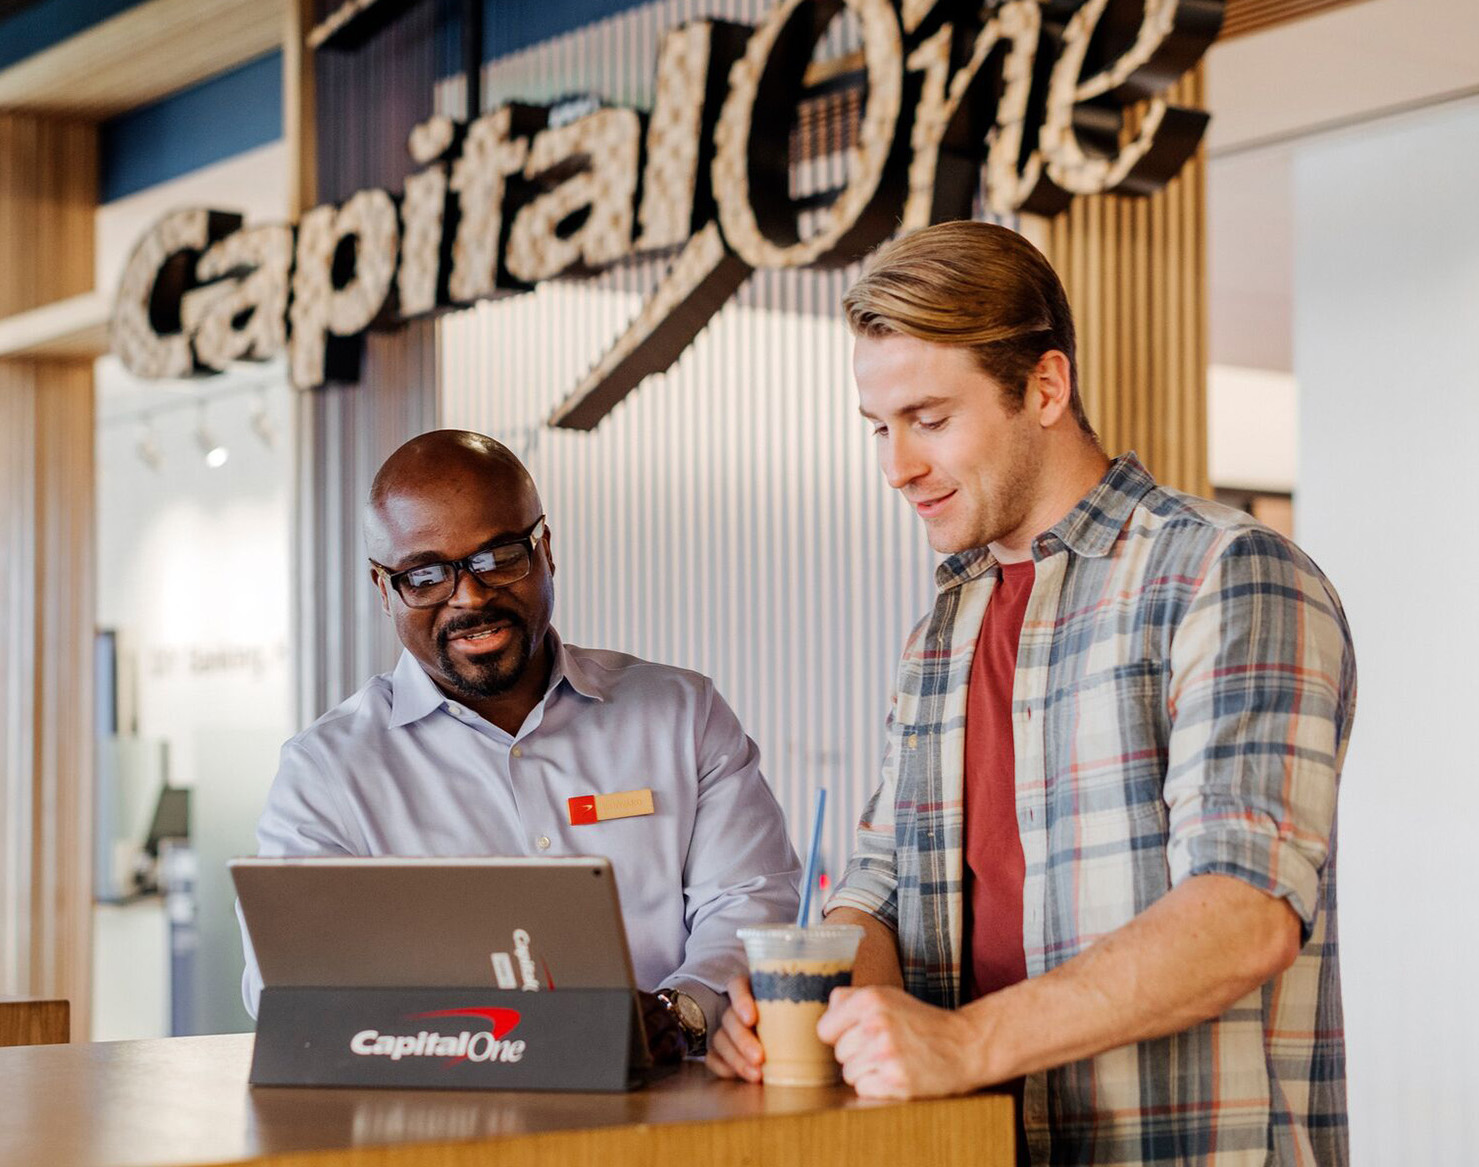 A Capital One Cafe Ambassador helps a customer